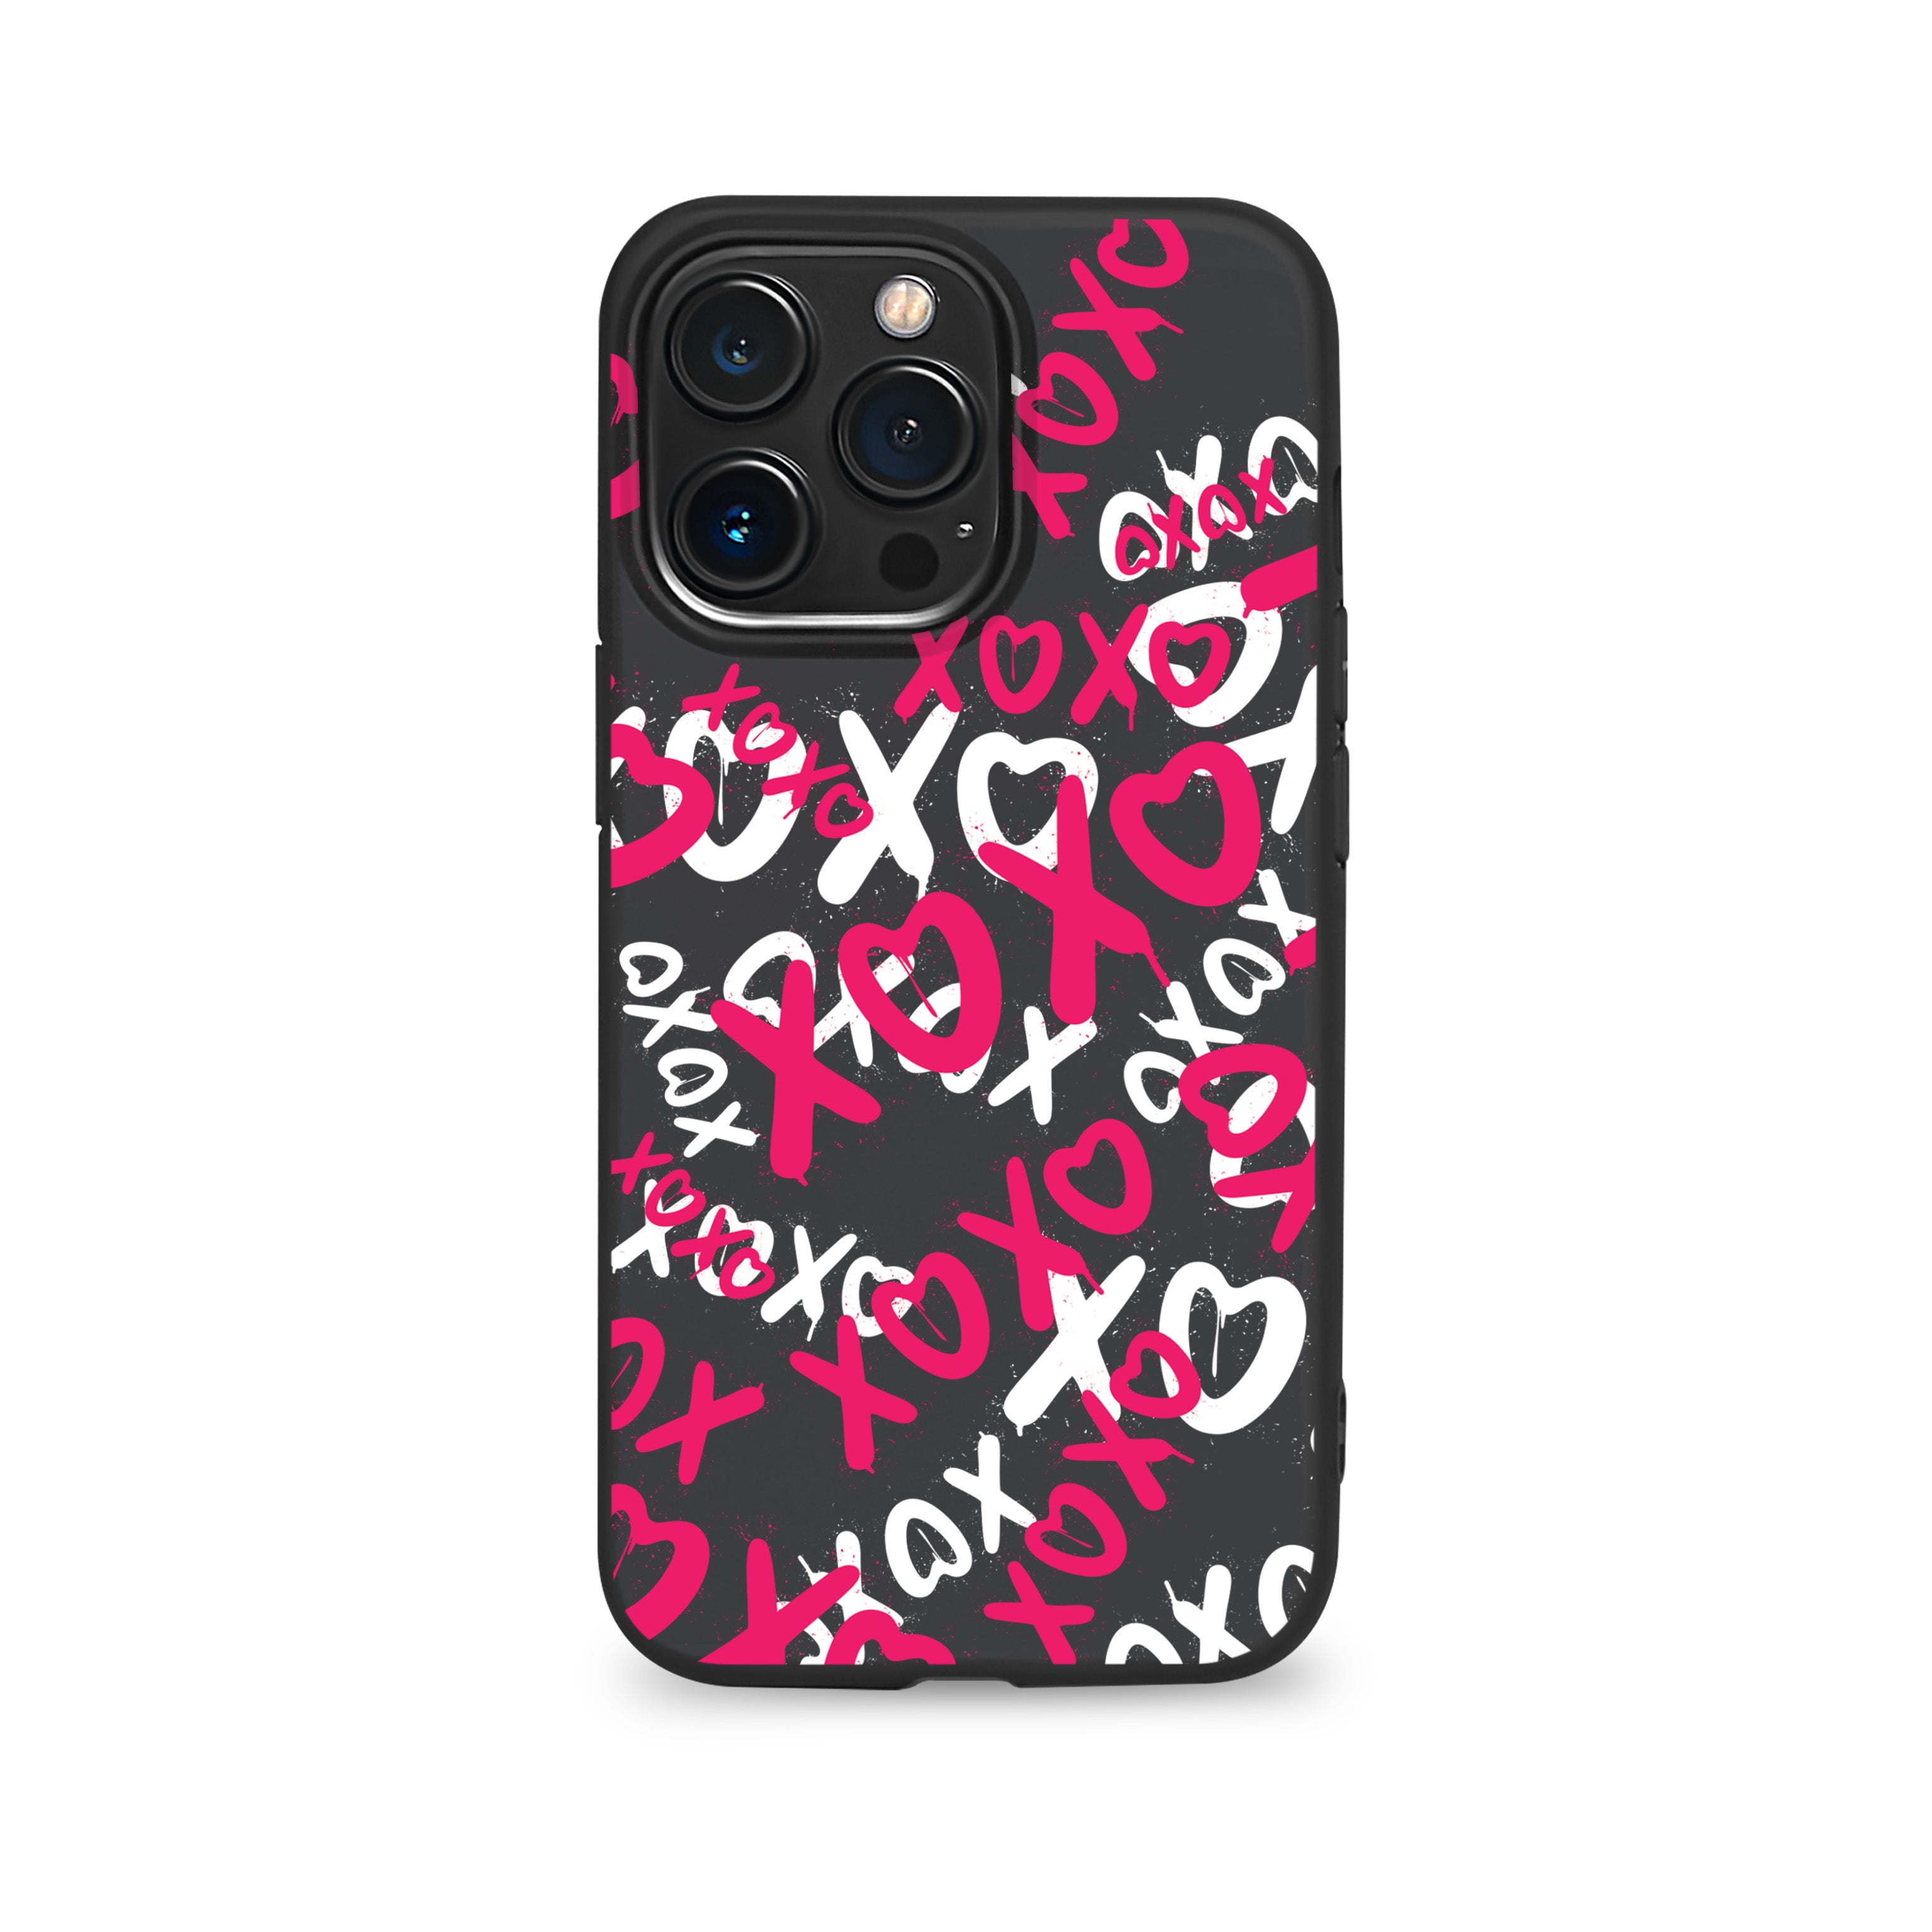 Ho Ho Love phone case for iPhone (Black Premium TPU)